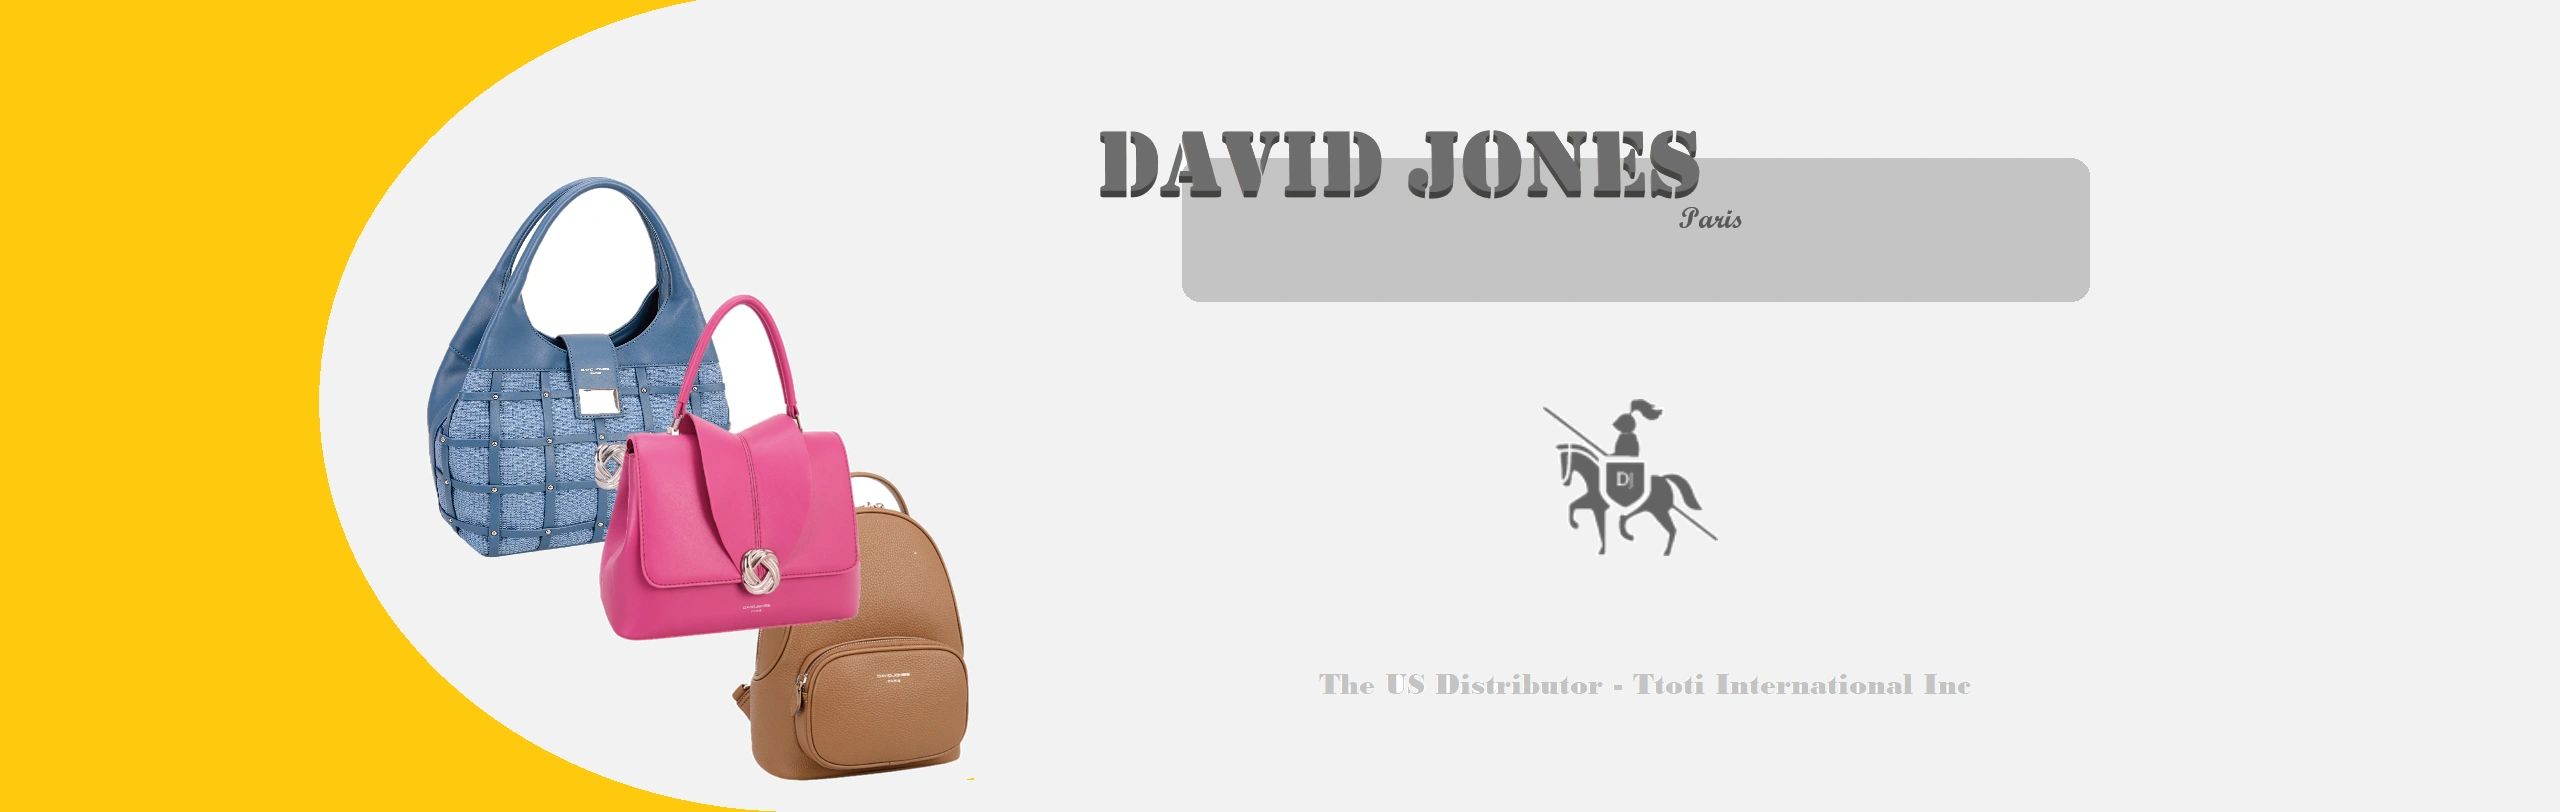 David Jones Bags & Handbags – Pet & Country